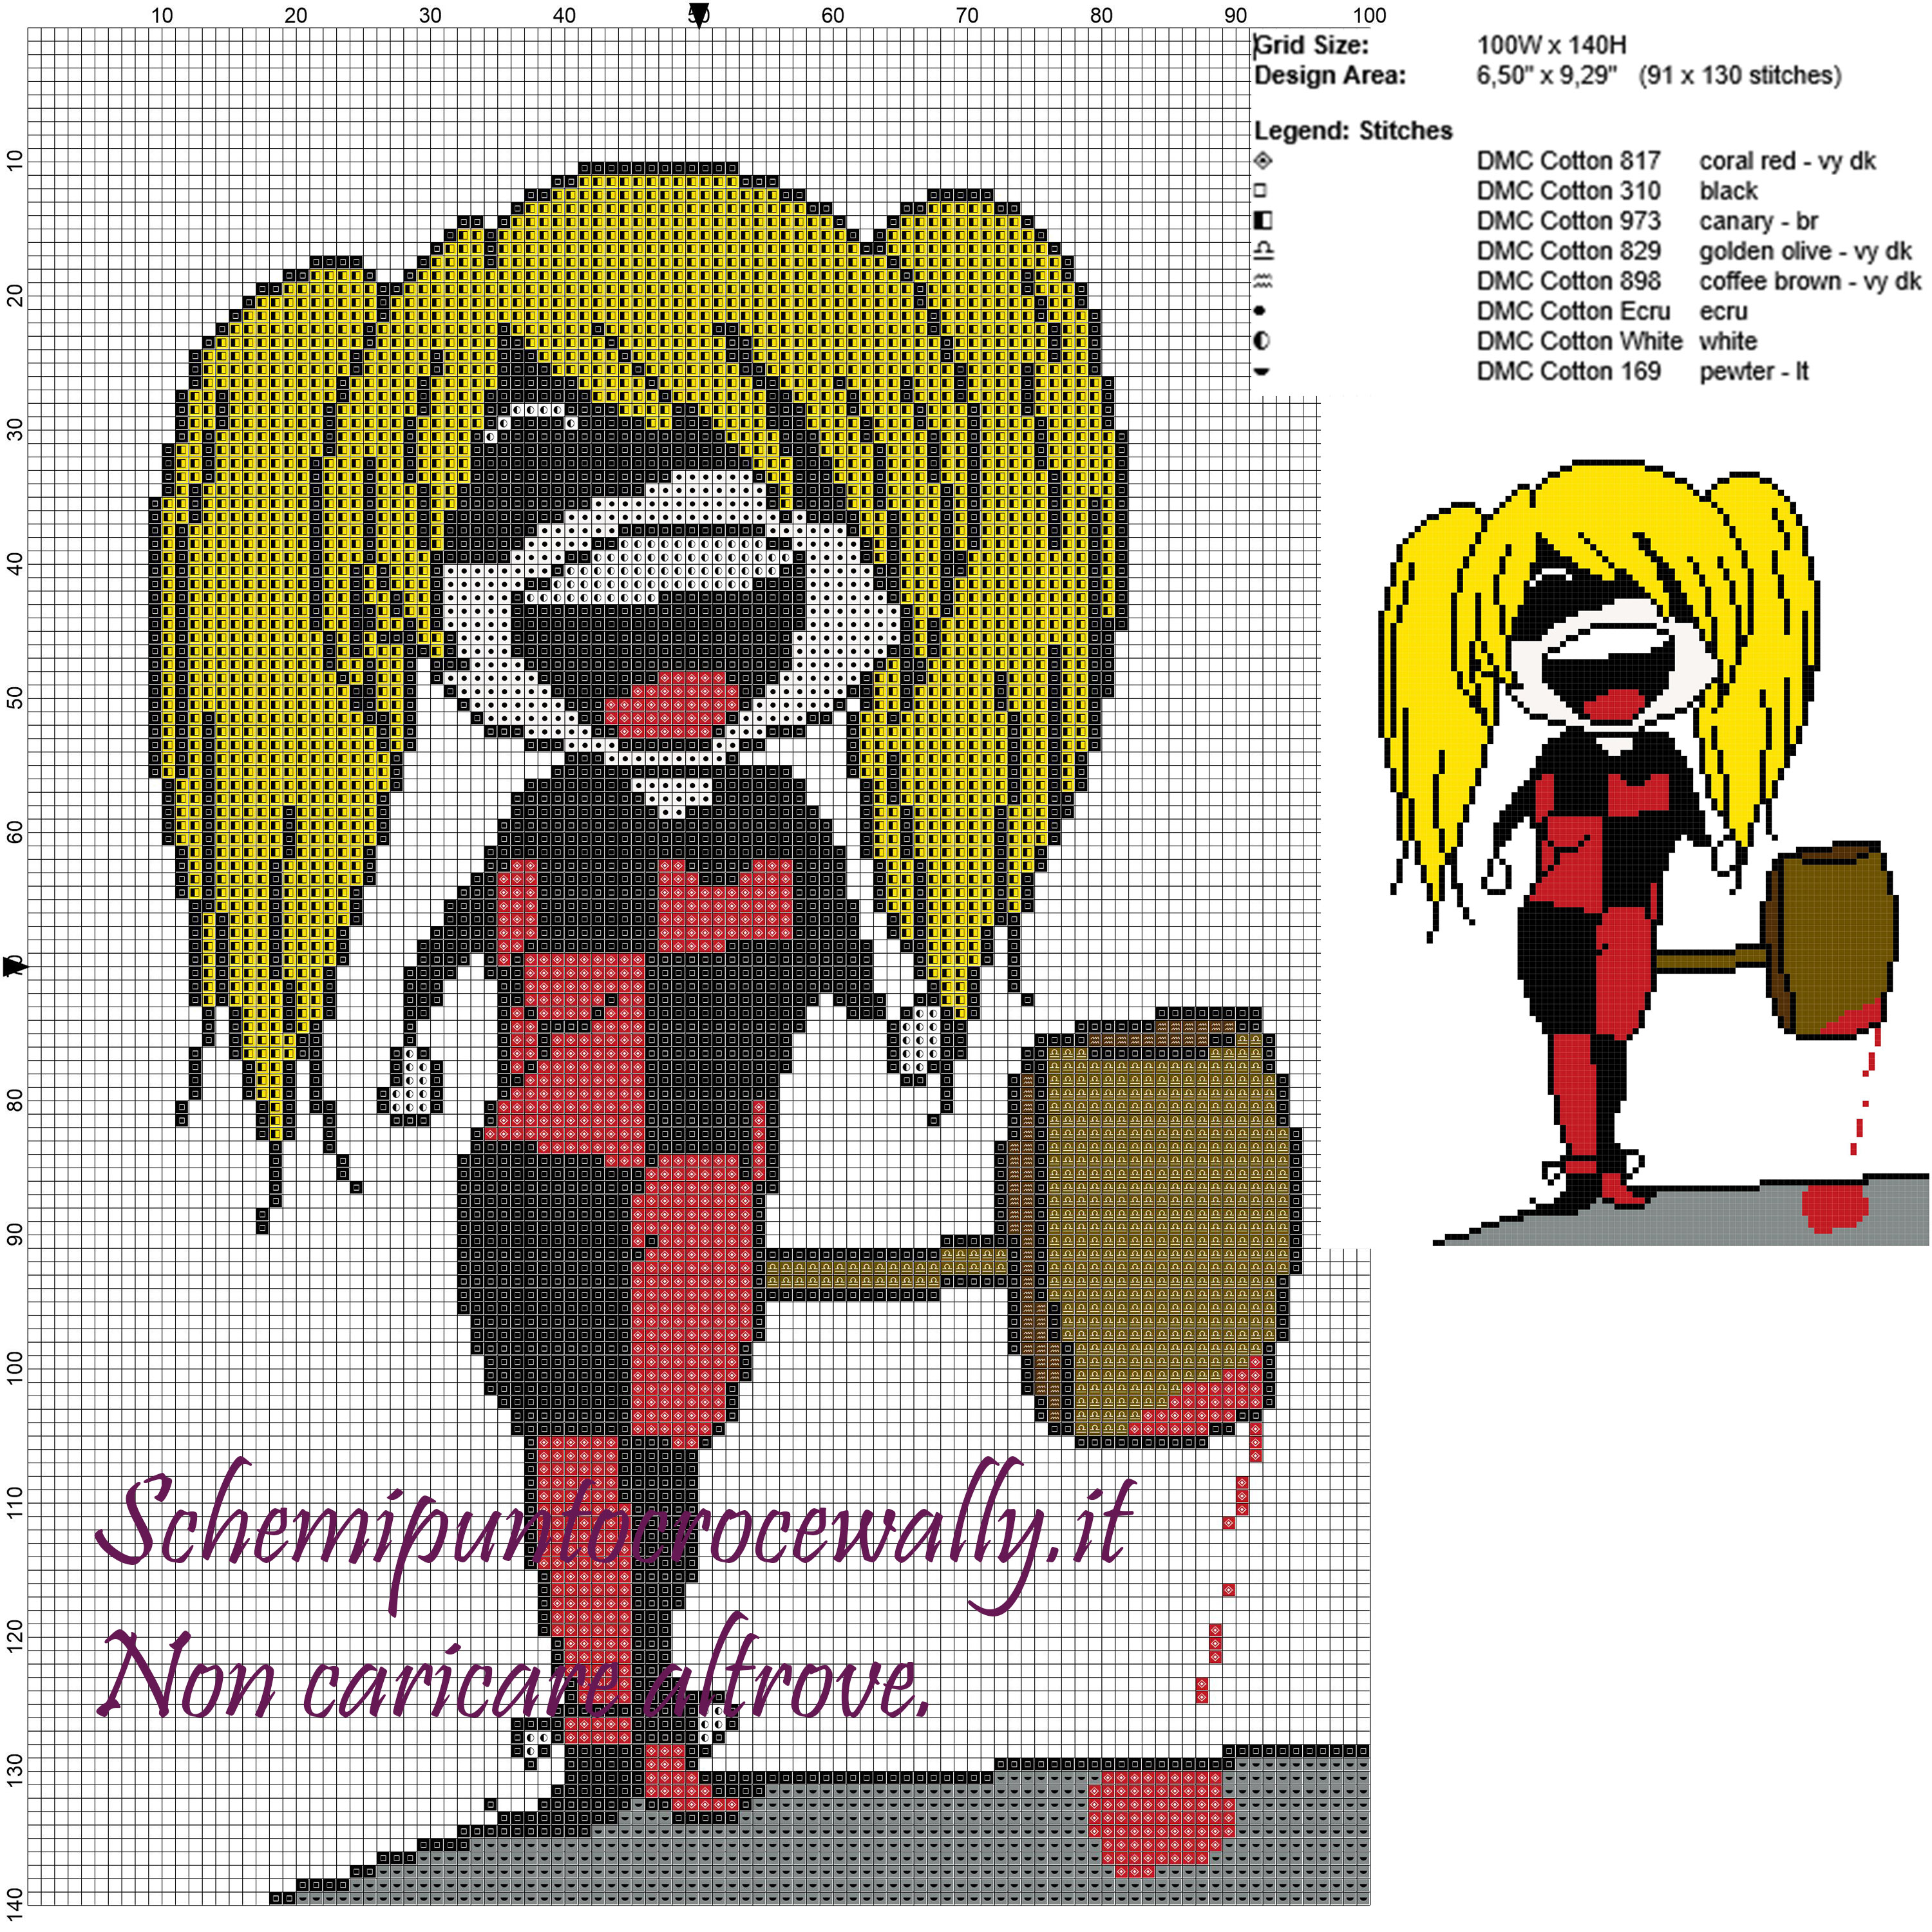 Harley Quinn (Batman) schema punto croce 100x140 8 colori